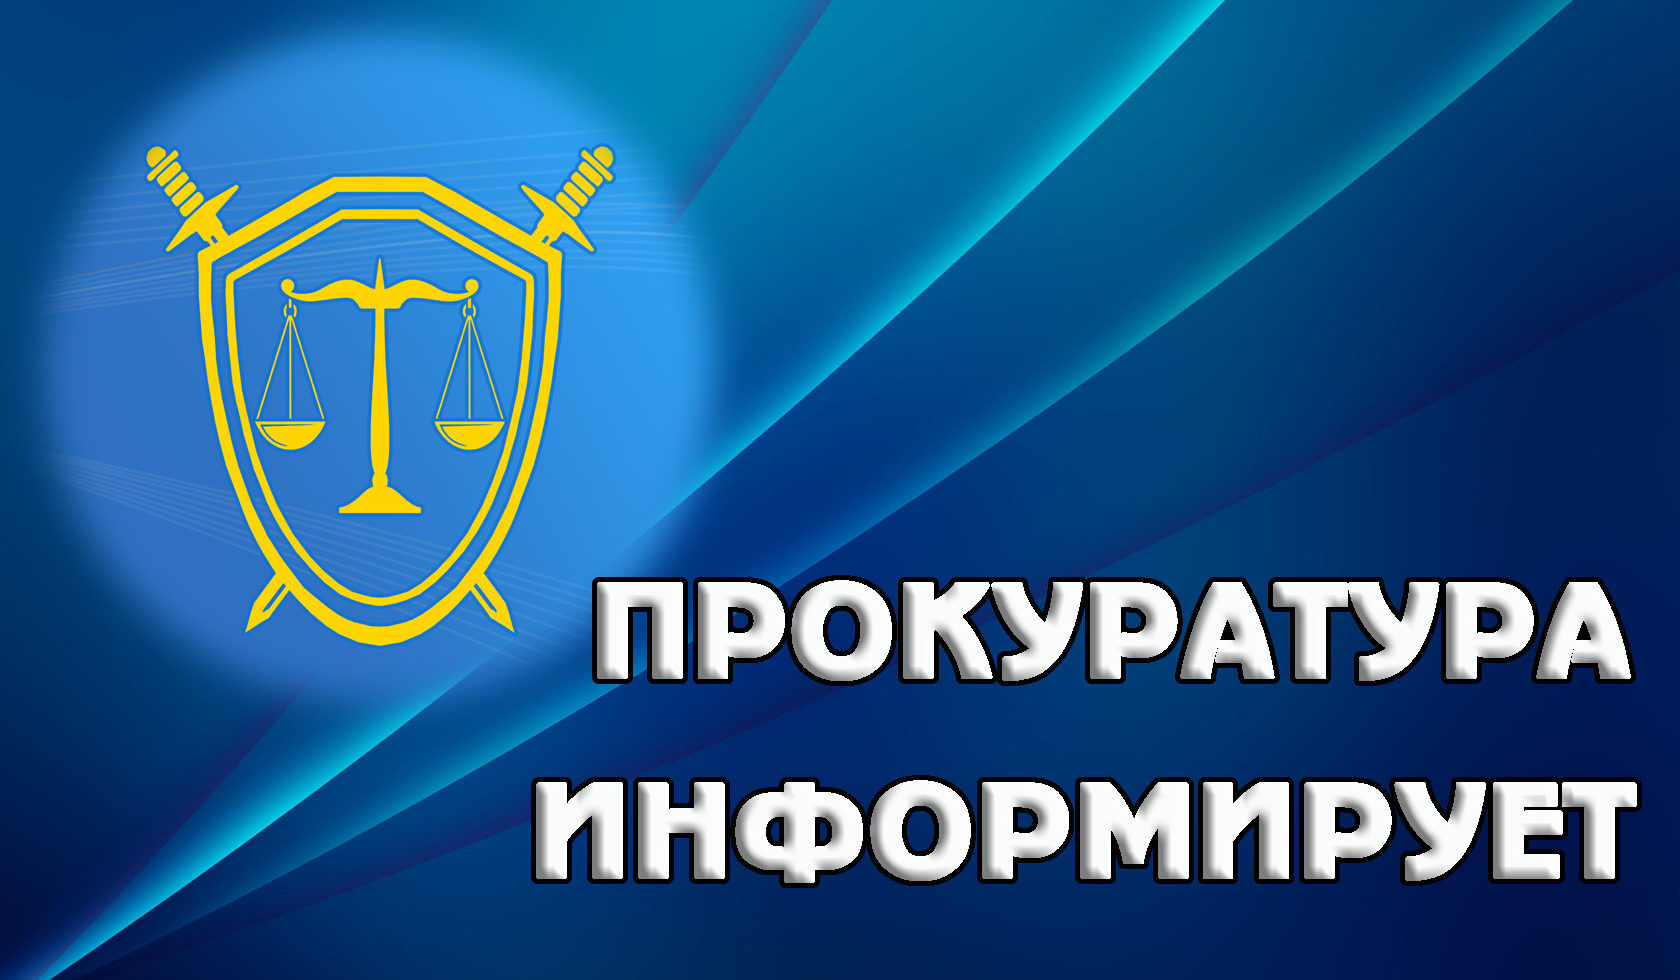 Прокуратура Засвияжского района г. Ульяновска предупреждает о новых способах совершения  хищений средств граждан.